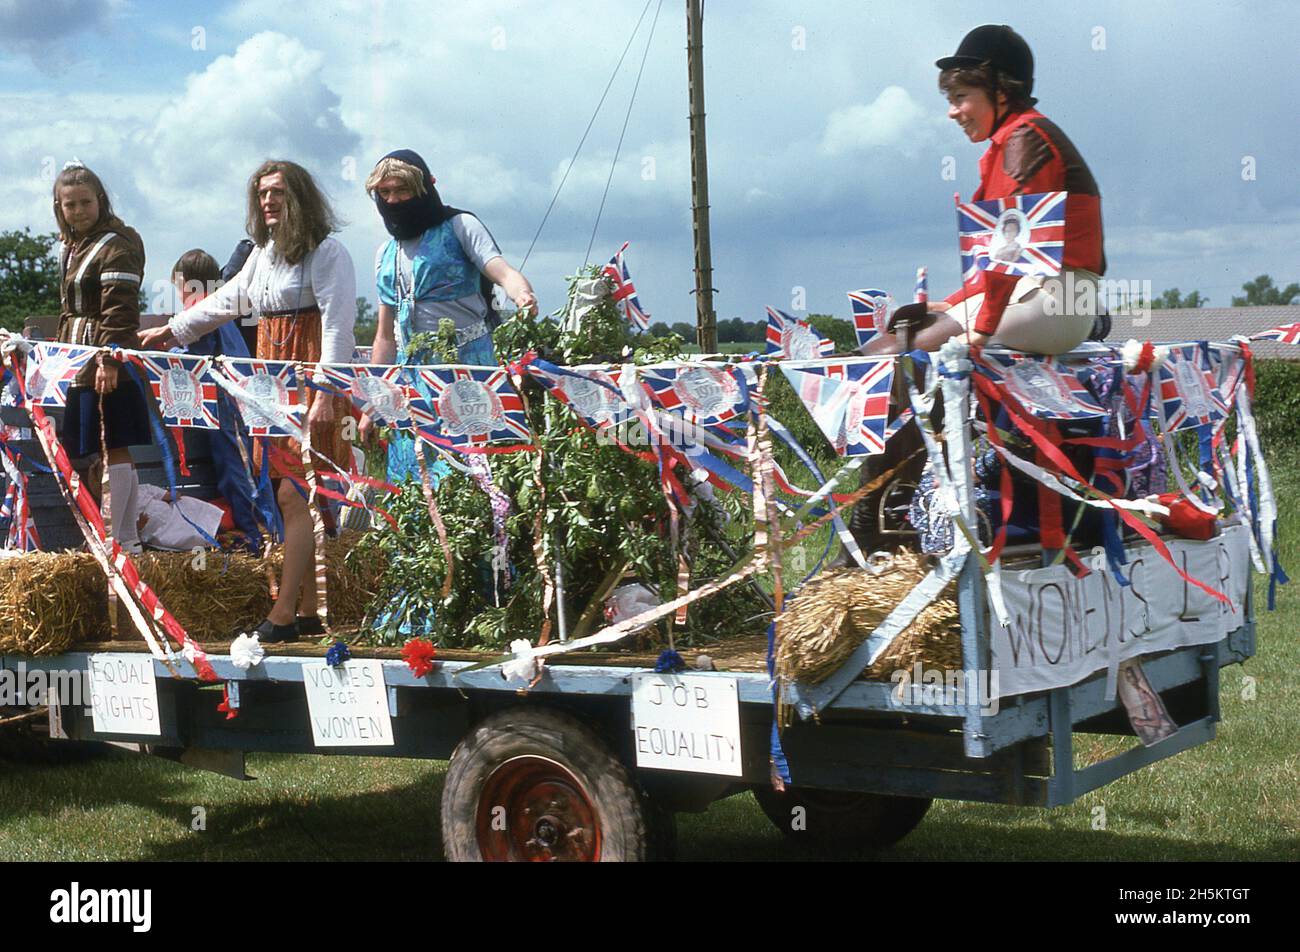 1977, historique, juin et en Grande-Bretagne, les personnes célébrant le jubilé d'argent, du monarque Reine Elizabeth IIÀ l'arrière d'une remorque ou d'un flotteur décoré, deux hommes habillés comme des femmes, plus des filles, un dans une culotte d'équitation assis à l'arrière de la remorque.Les droits des femmes, les votes pour les femmes et l'égalité des droits sont des signes annoncés sur le côté de la bande-annonce, Tilstone, Cheshire, Angleterre, Royaume-Uni. Banque D'Images